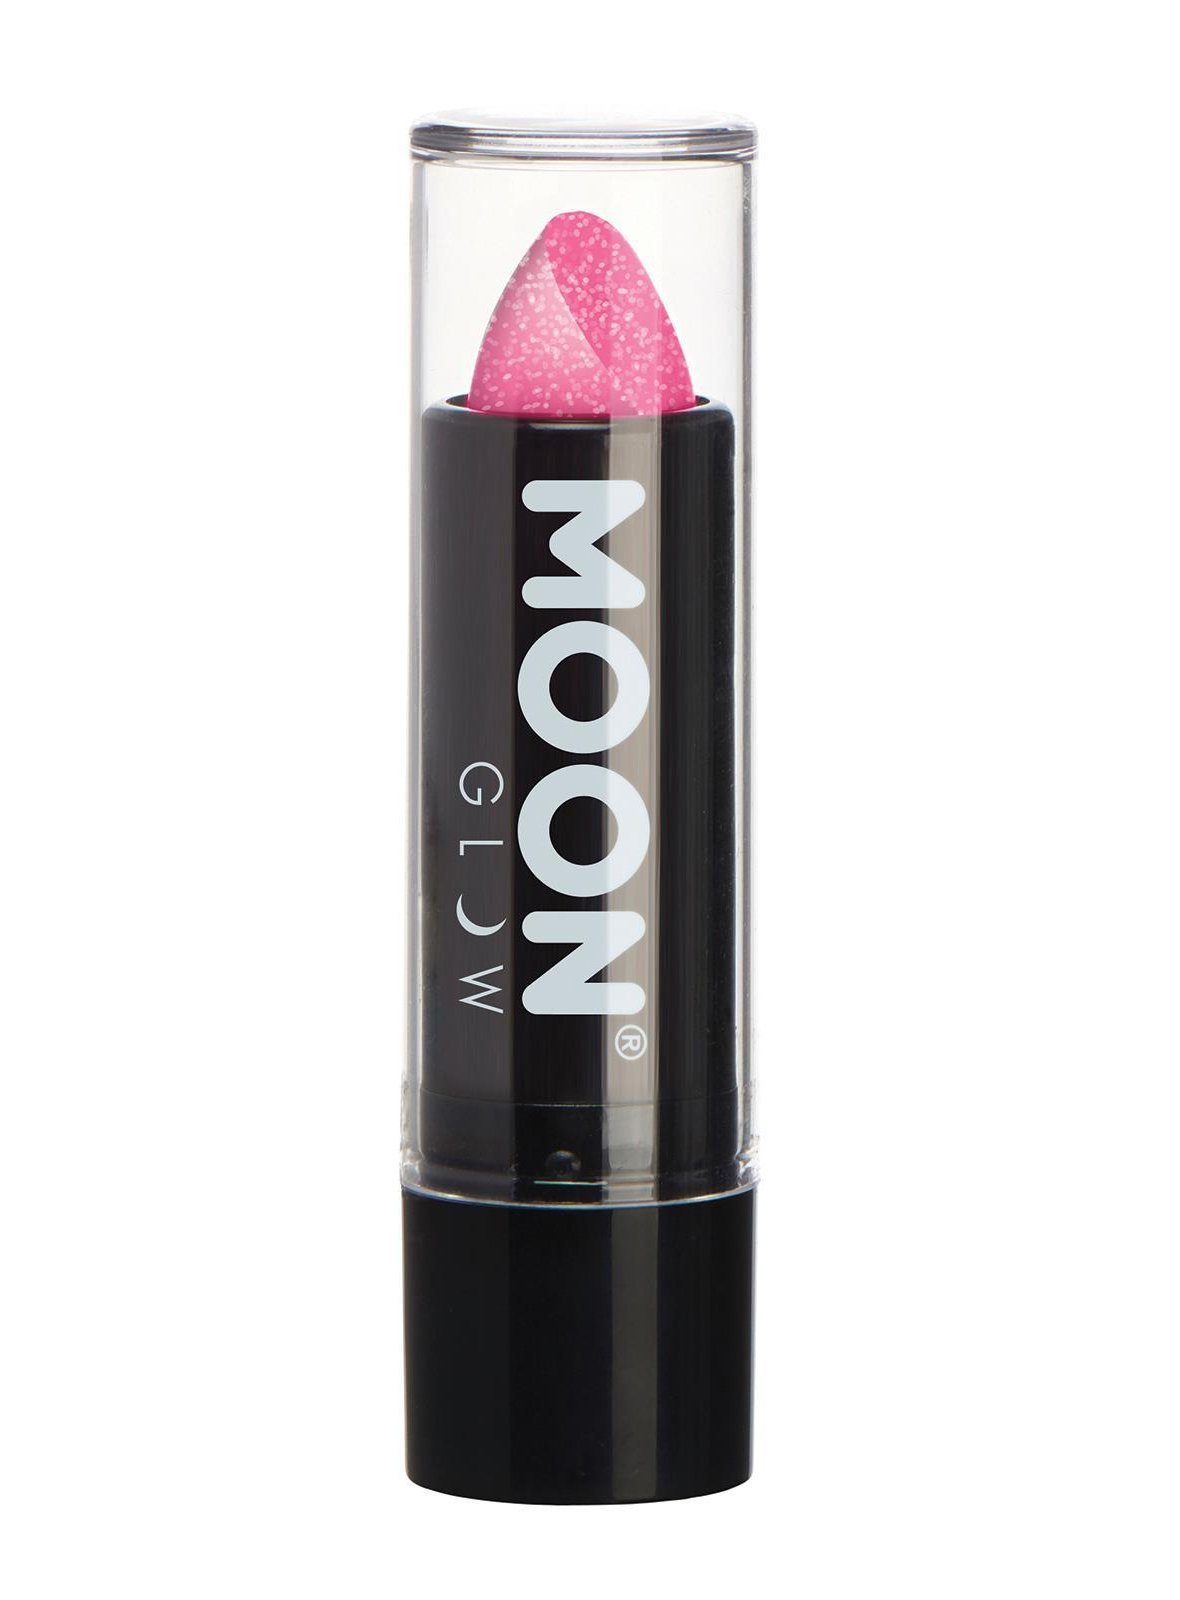 Smiffys Lippenstift Moon Glow Neon UV Glitzer Lippenstift pink, Glitzernder Neon-Lippenstift für einen aufregenden Look zu Fasching o